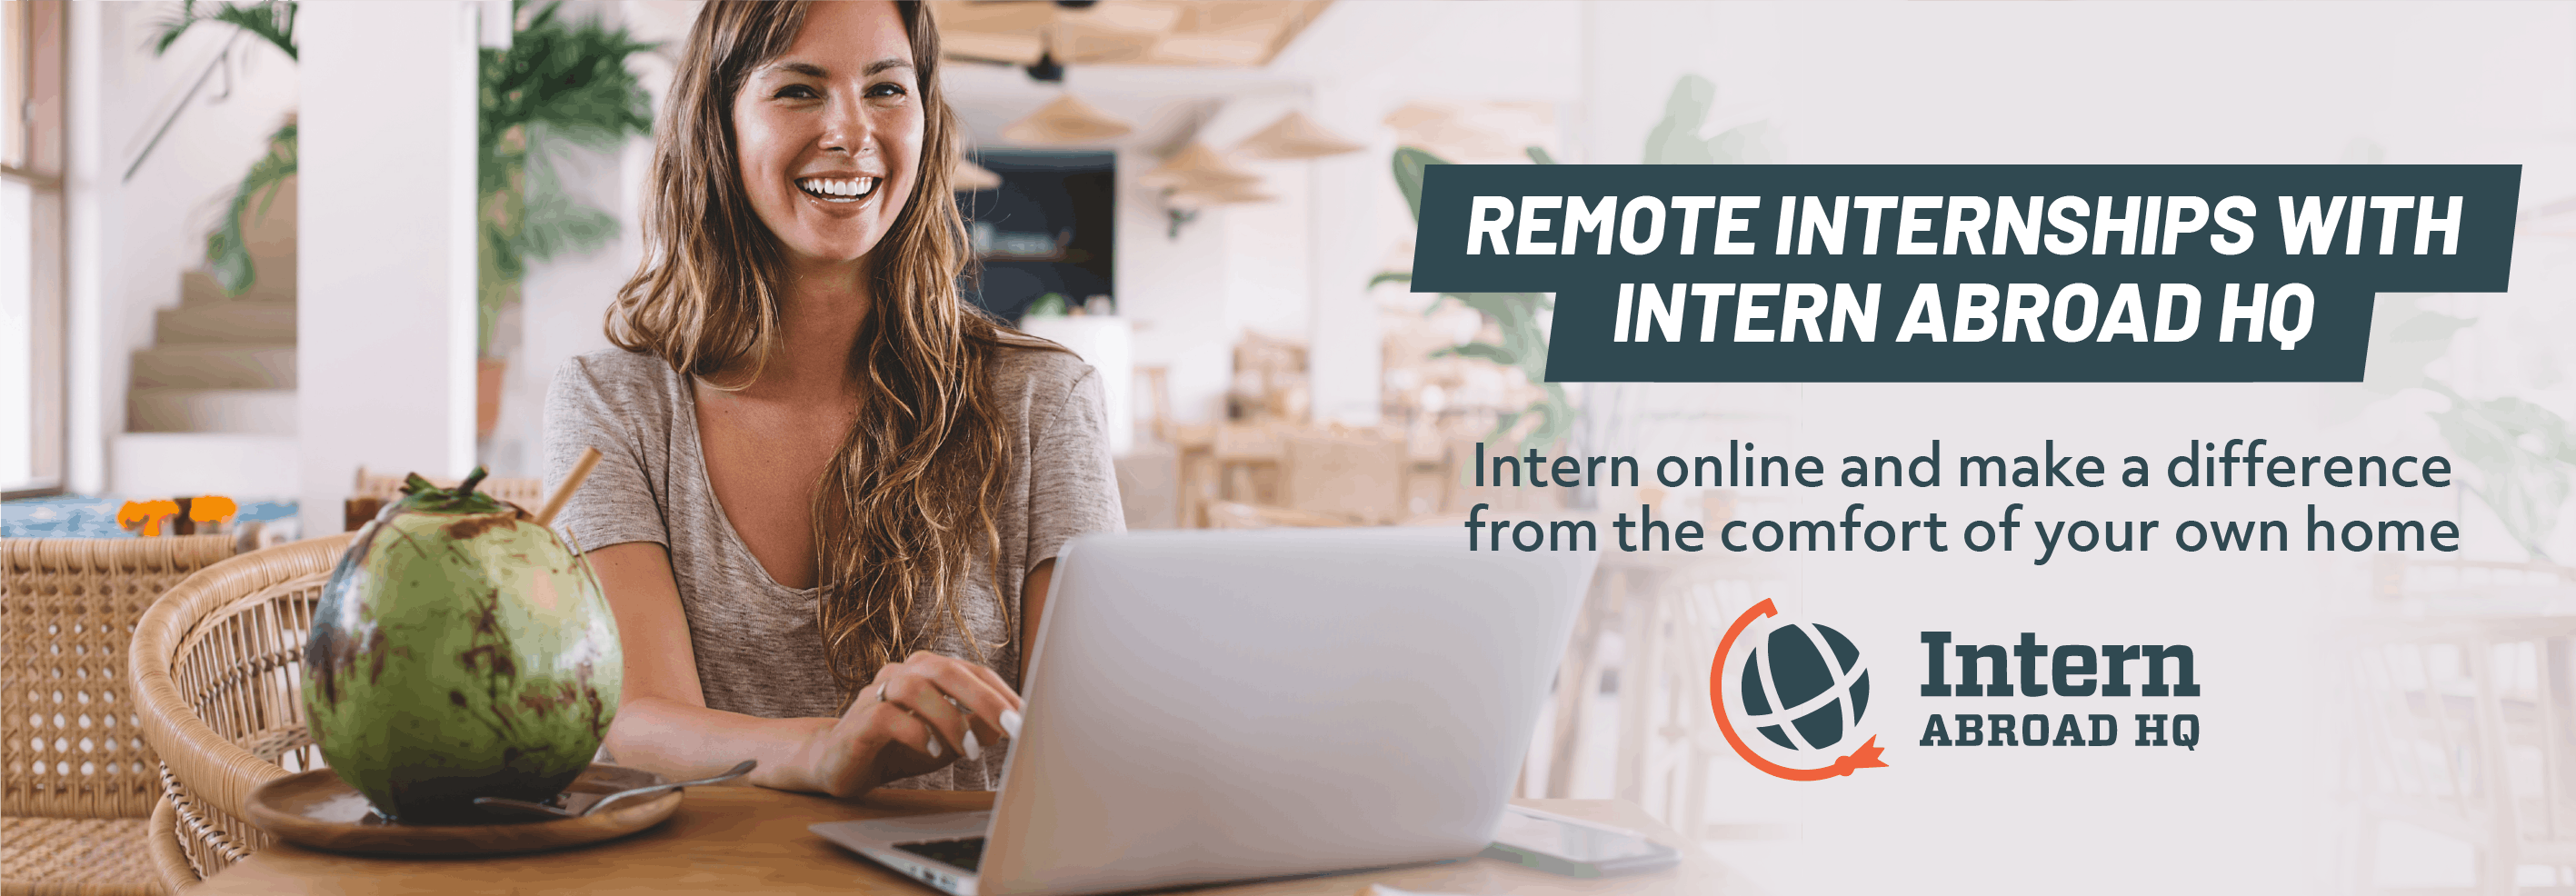 Remote Internships International Volunteer HQ